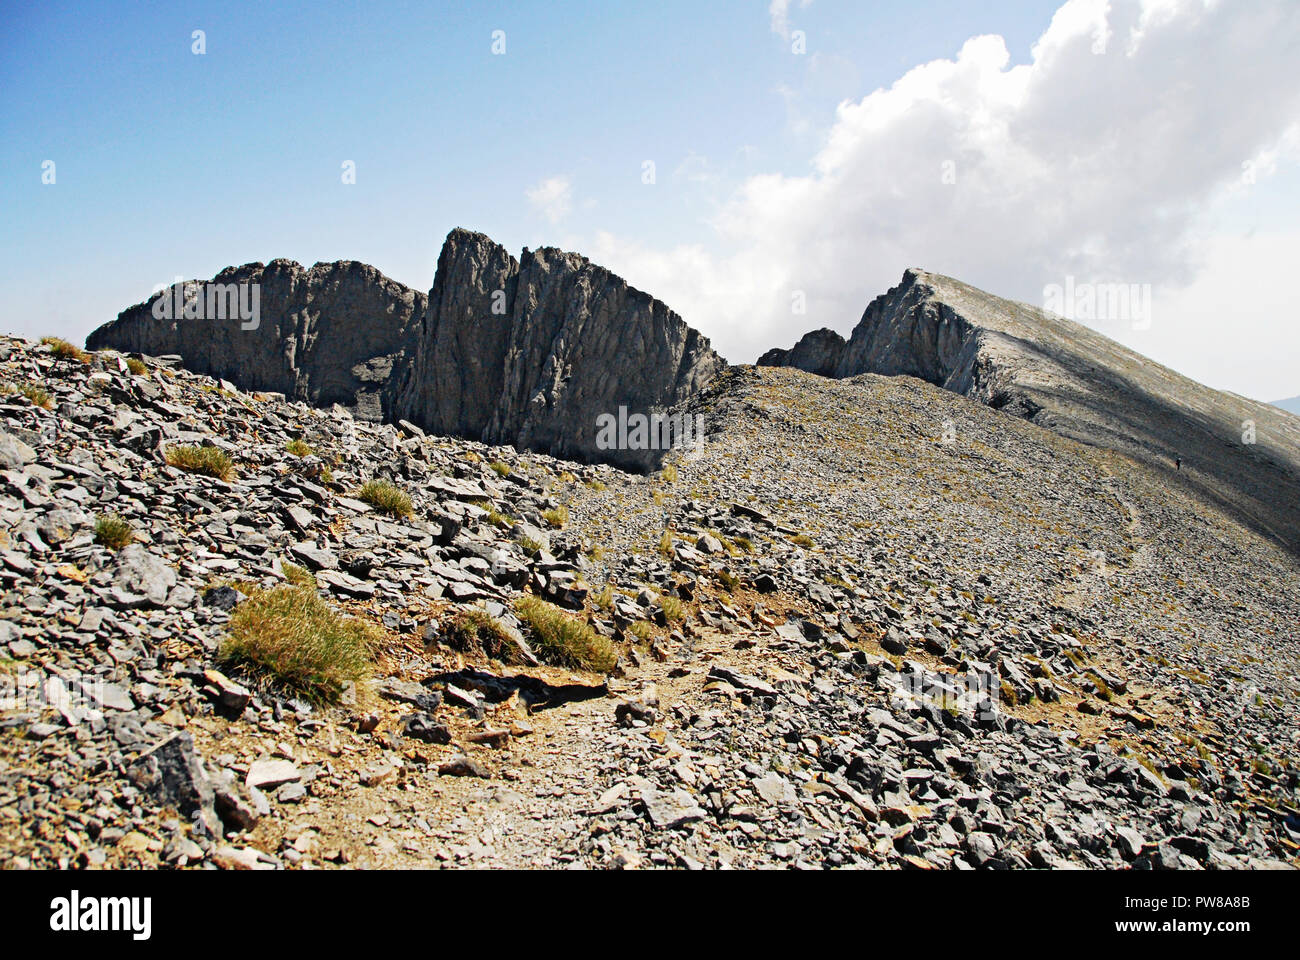 Landschaft von Berg Olympus mit Gipfel Mytikas (2,917 m. Höhe) im Hintergrund, auf dem Weg der E4 Europäischer Fernwanderweg in Richtung der Hi Stockfoto